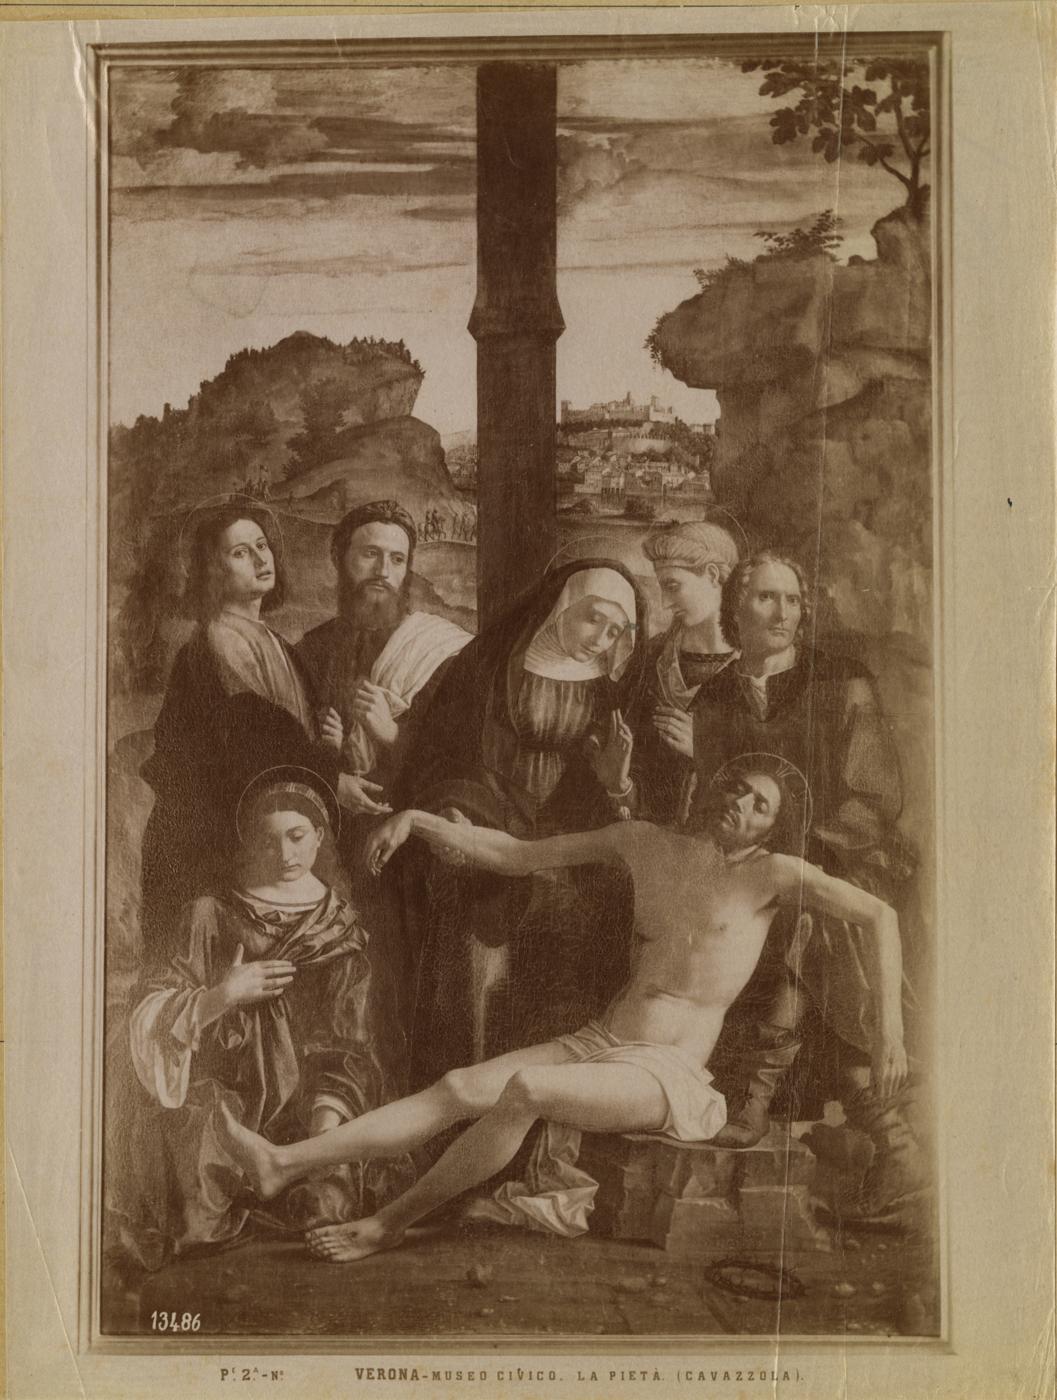 Compianto sul Cristo morto - Dipinti (positivo) di Cavazzola, Fratelli Alinari (XIX)